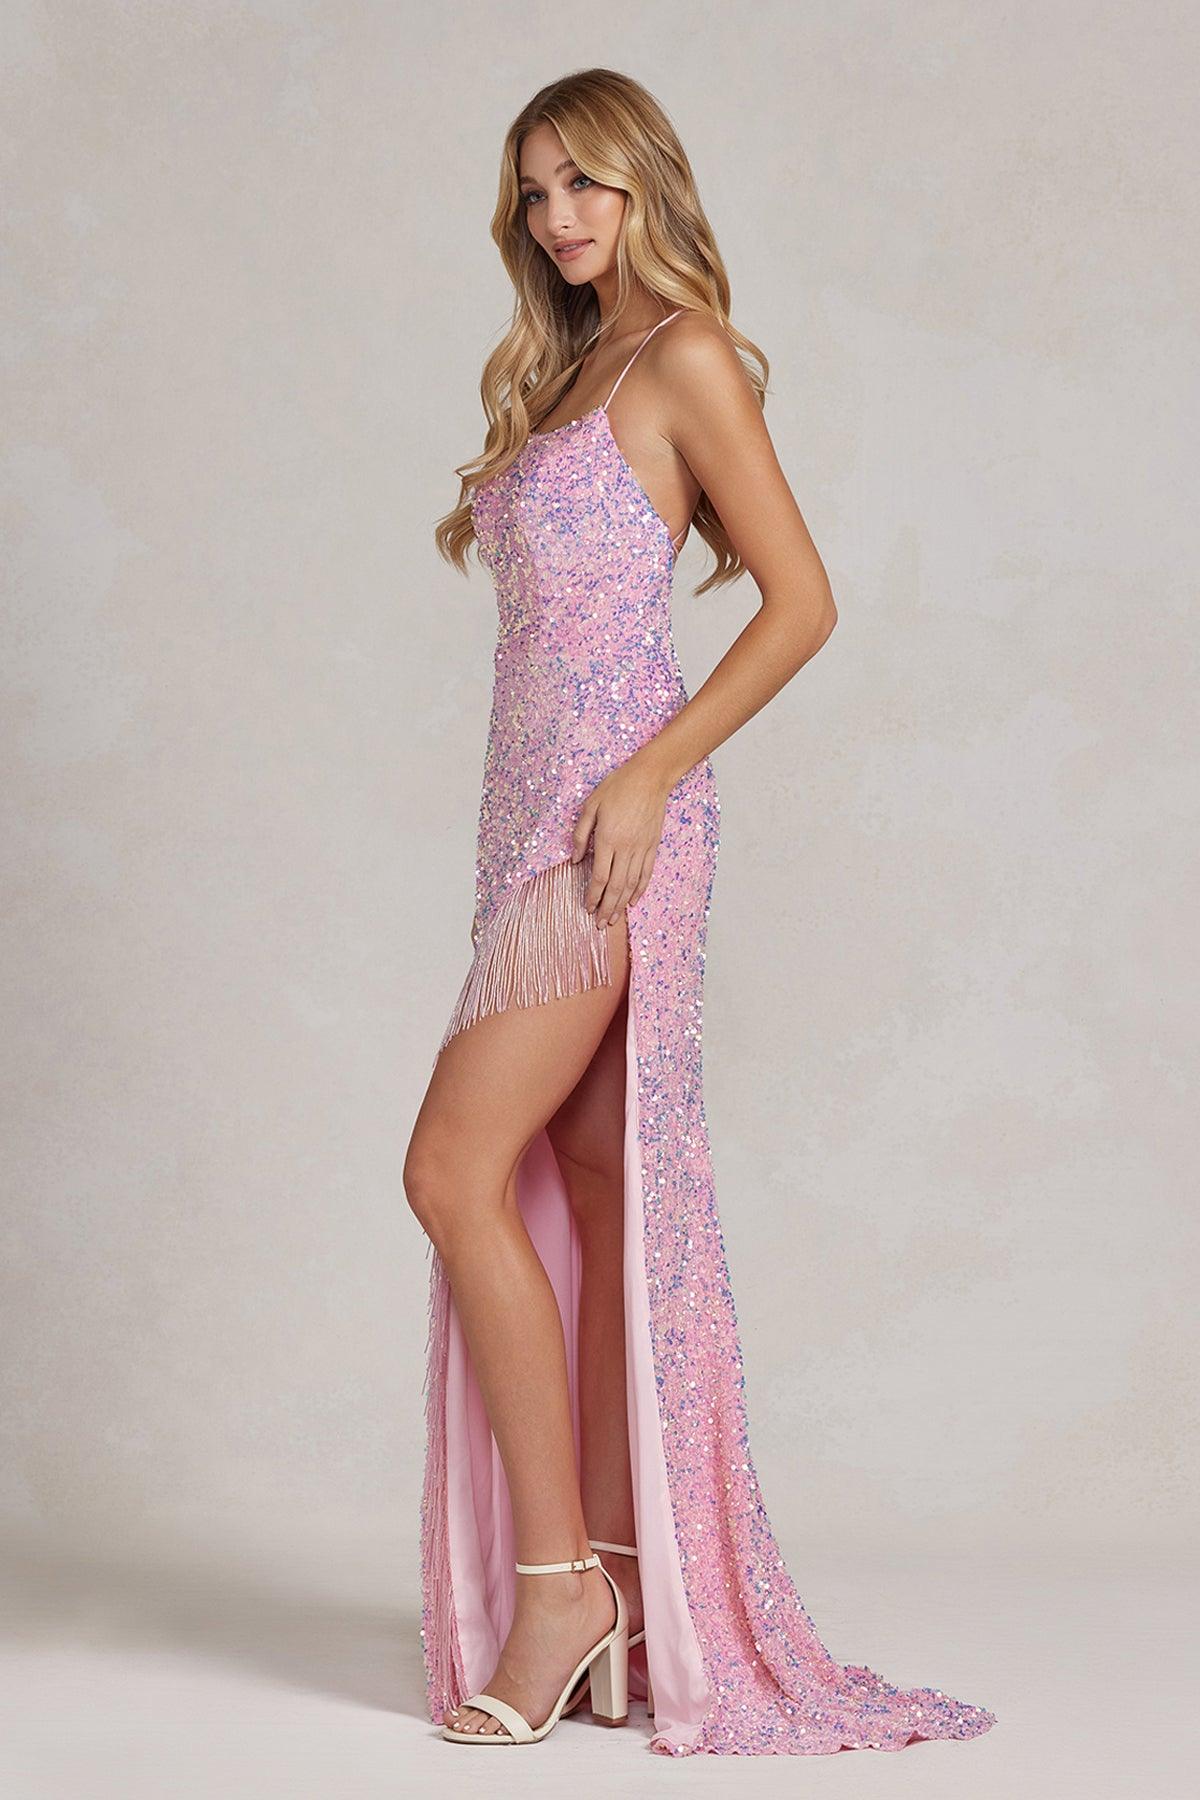 Nox Anabel T1209 Long Formal Fringe Slit Prom Gown Pink